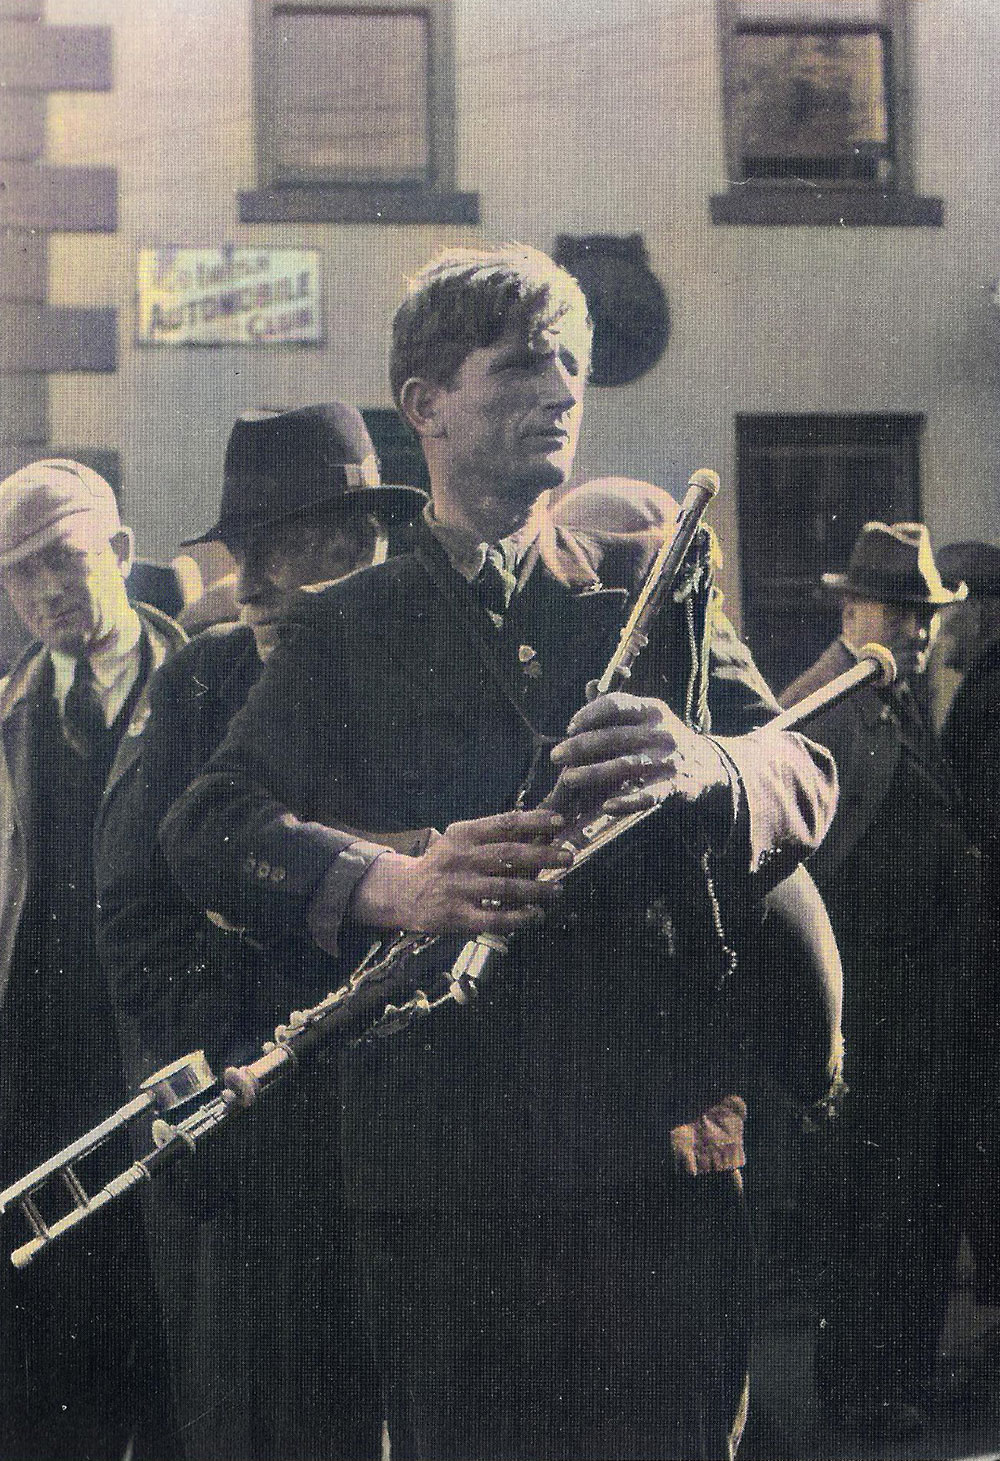 Master piper Johnny Dorna busking at the Lammas fair in Ballycastle around 1936.